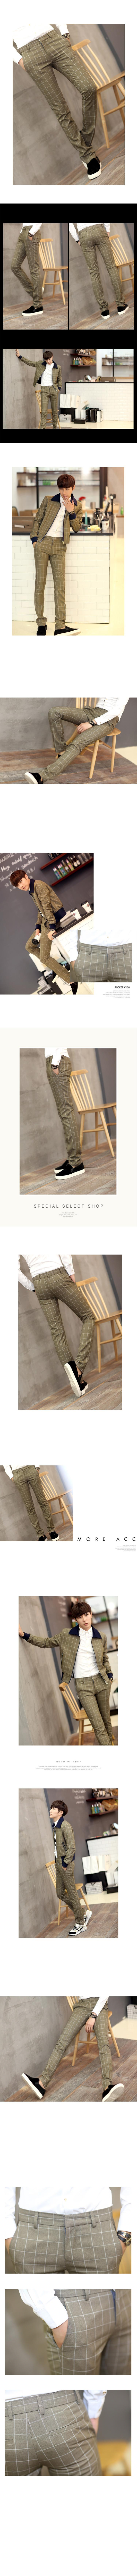 mssefn2014新款格子瘦腿裤 男士韩版修身休闲小脚长裤潮 1801-K129